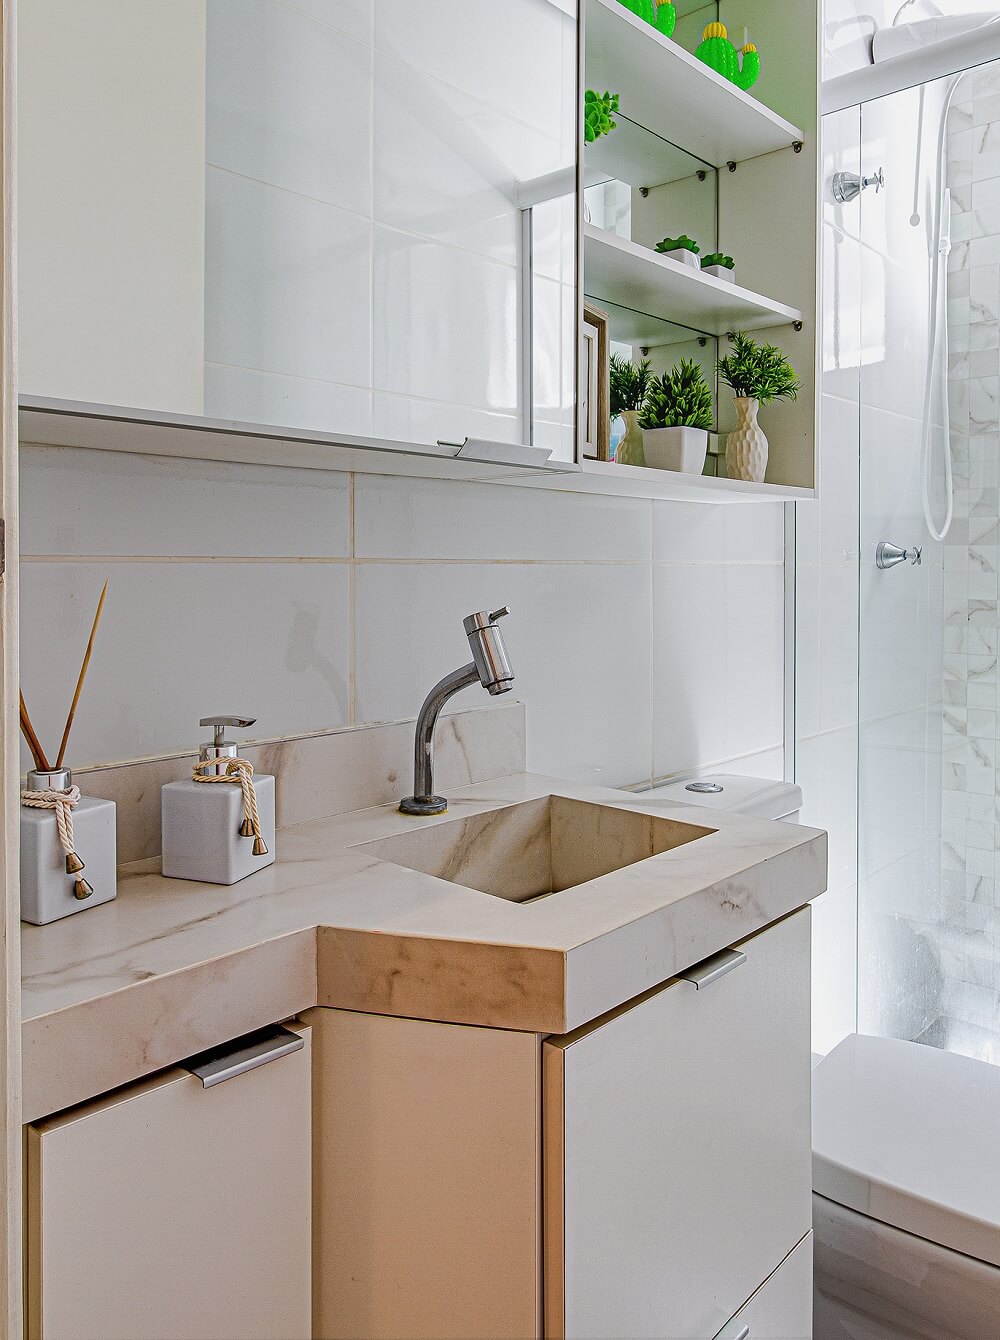 Os revestimentos do banheiro foram alterados por uma tonalidade mais clara. Projeto por Ana Johns Arquitetura